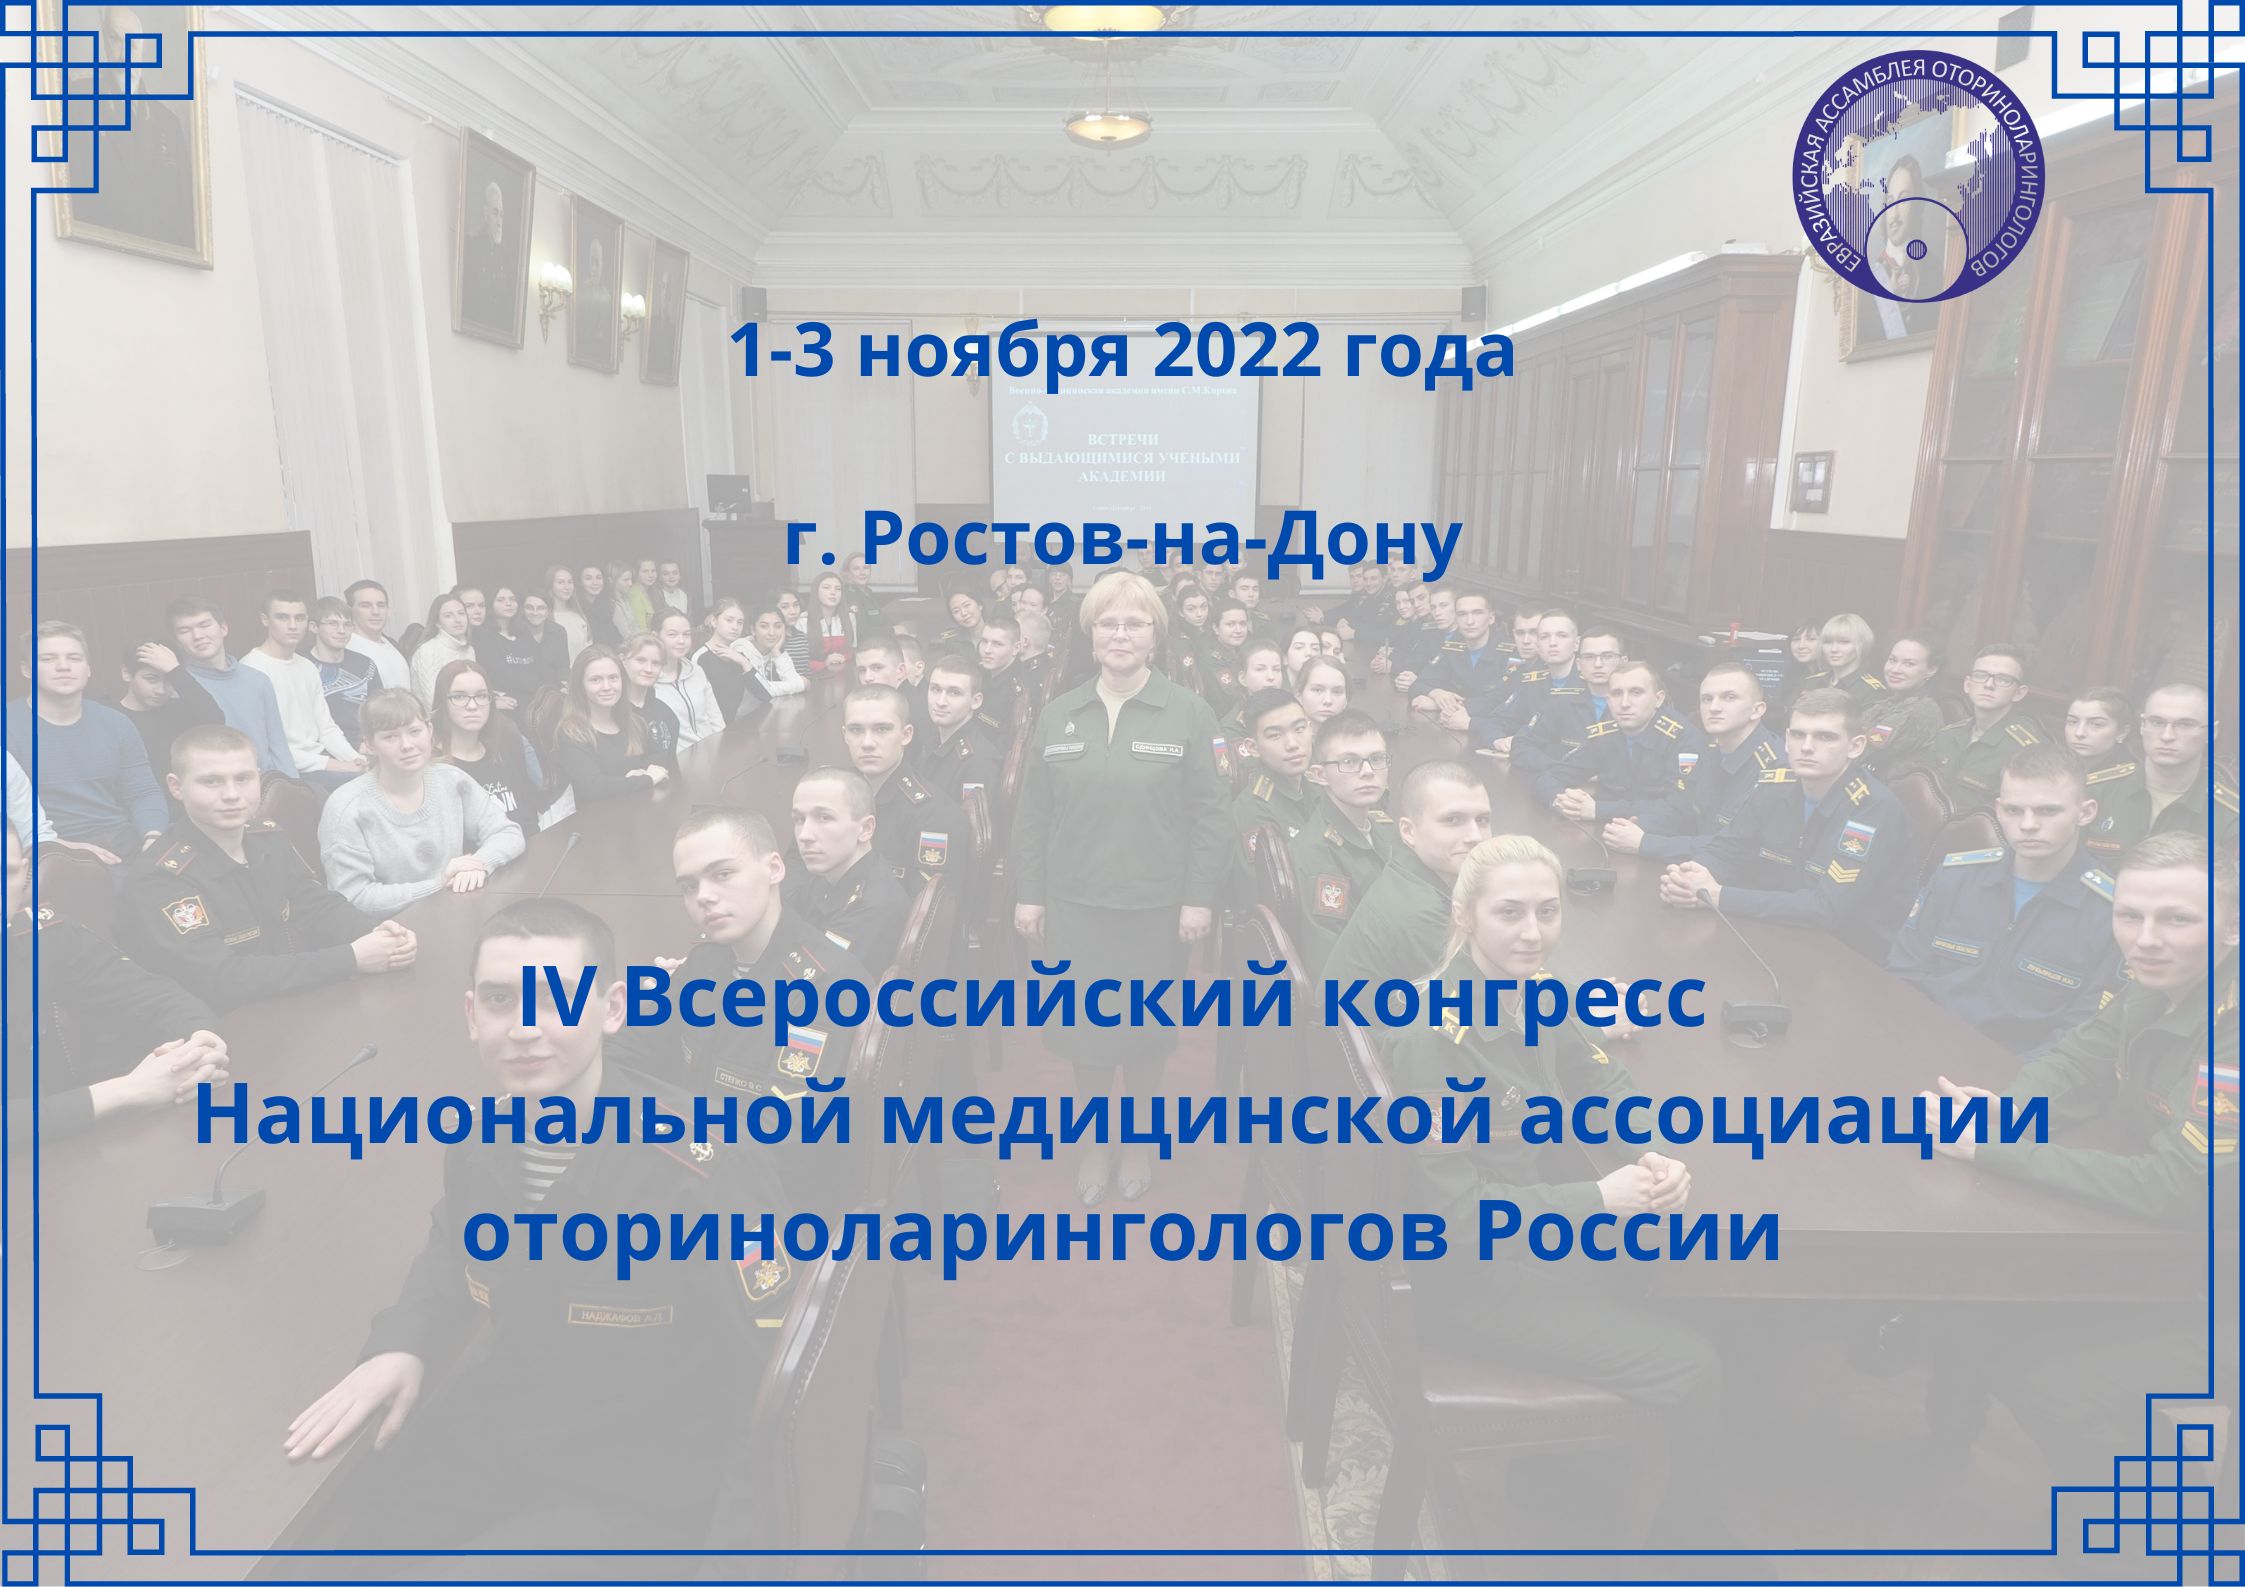 IV Всероссийский конгресс Национальной медицинской ассоциации оториноларингологов России